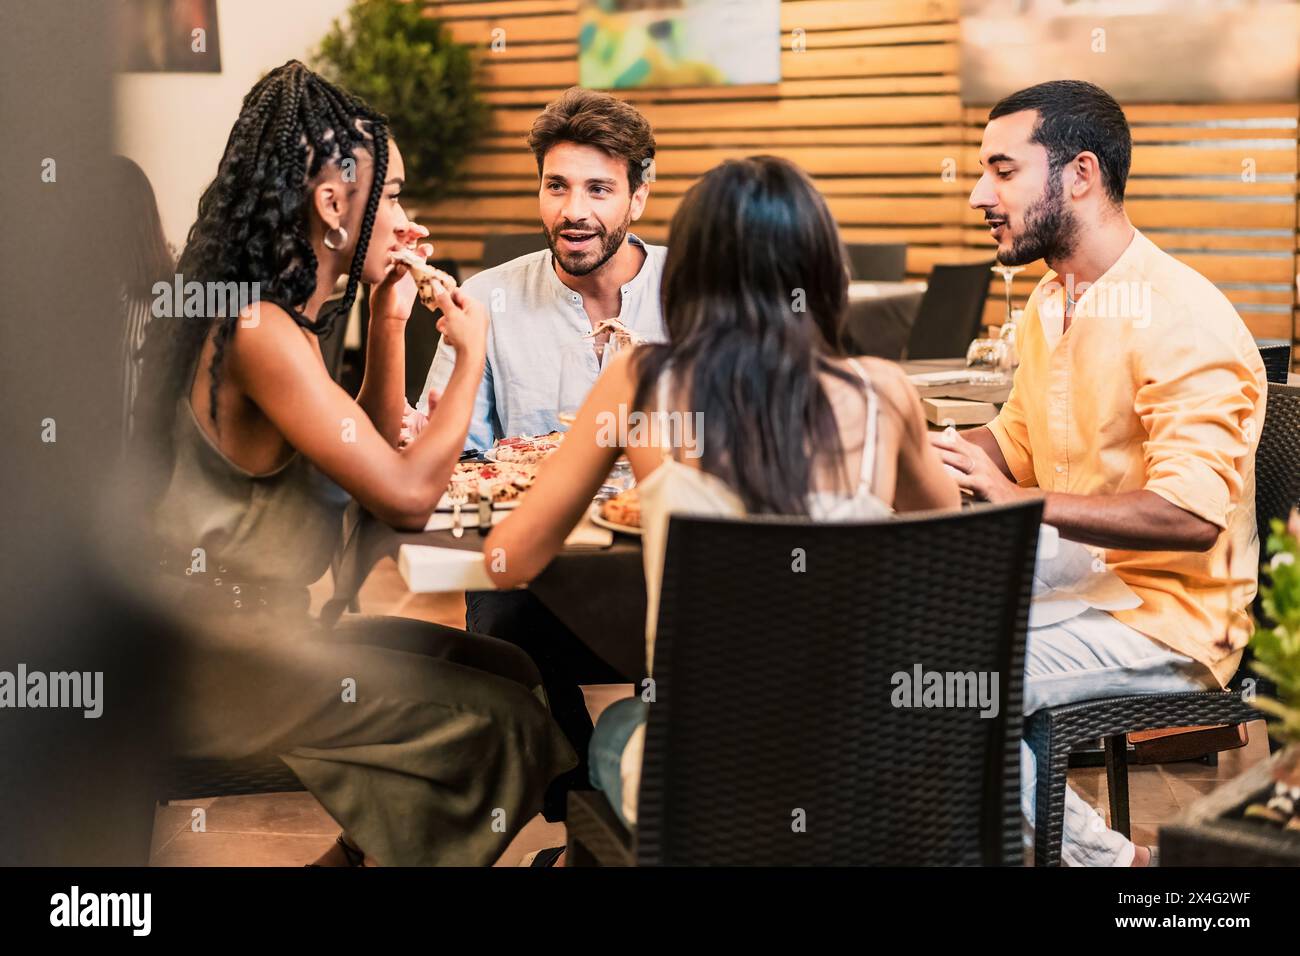 Vielfältige Gruppe von Freunden - Abendessen und Unterhaltung in einem Restaurant genießen, eine Mahlzeit in einer lebhaften städtischen Umgebung teilen - gesellig, unterhaltsam. Stockfoto